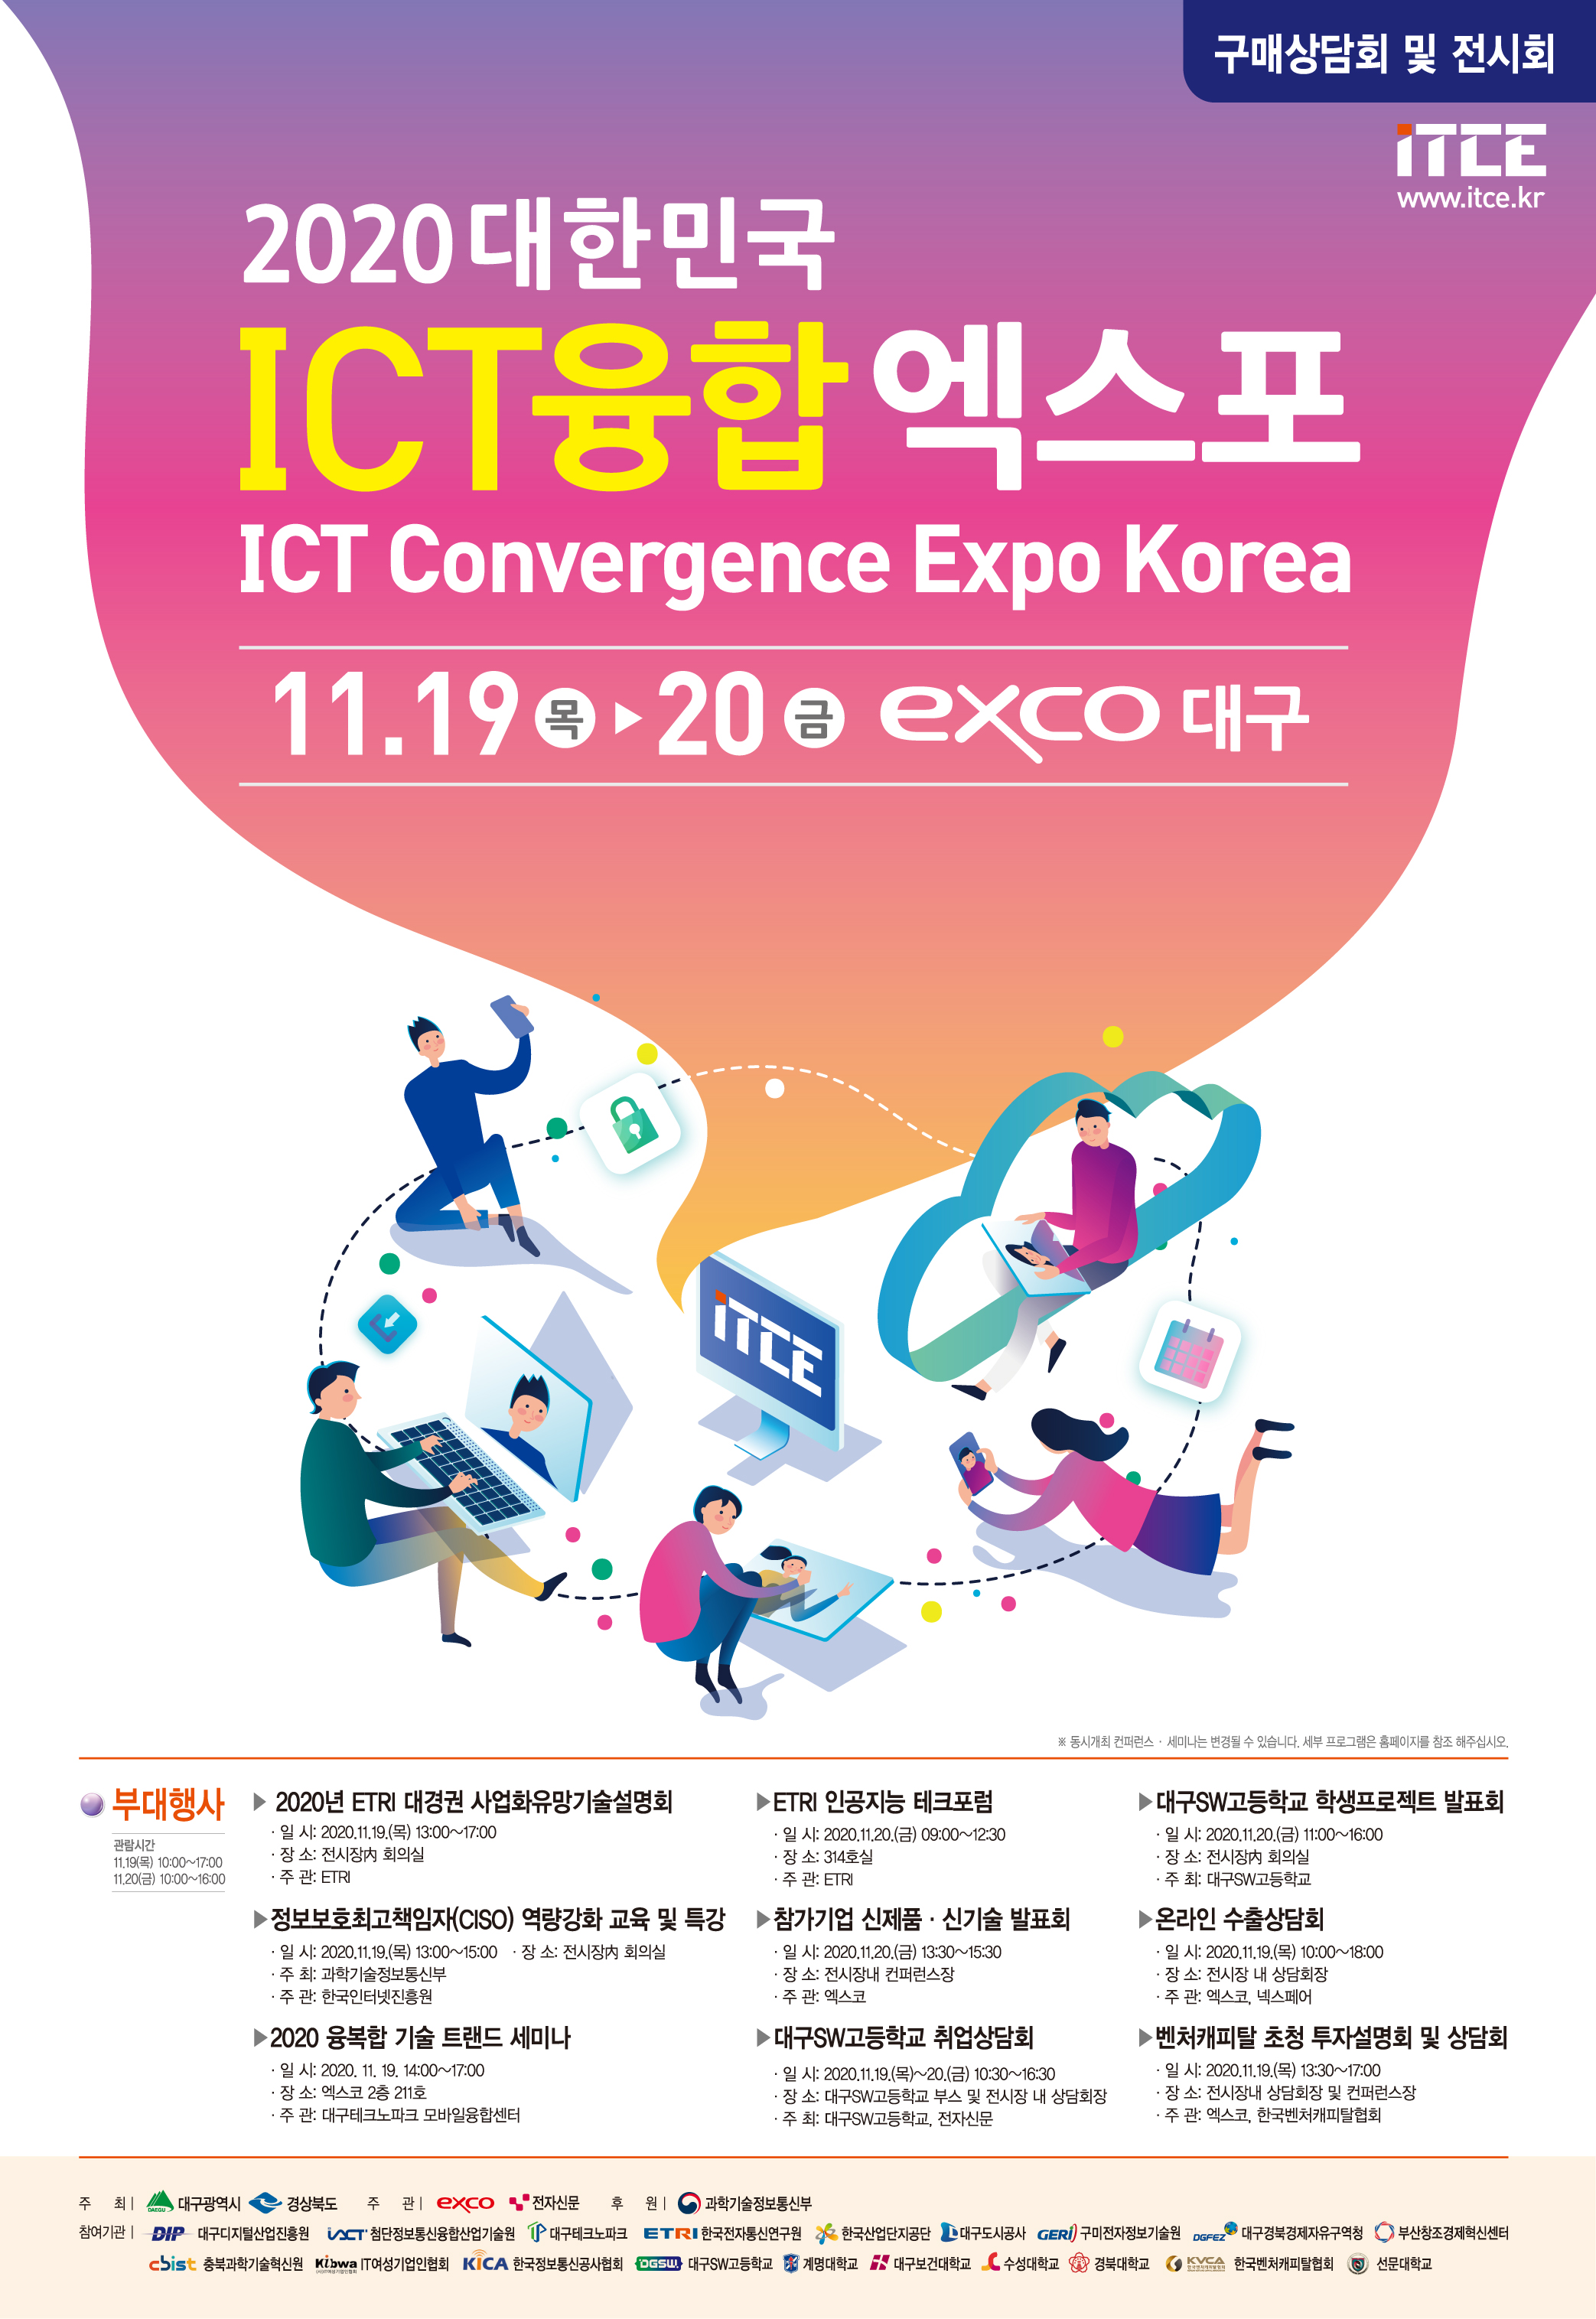 2020 대한민국 ICT융합 엑스포 개최